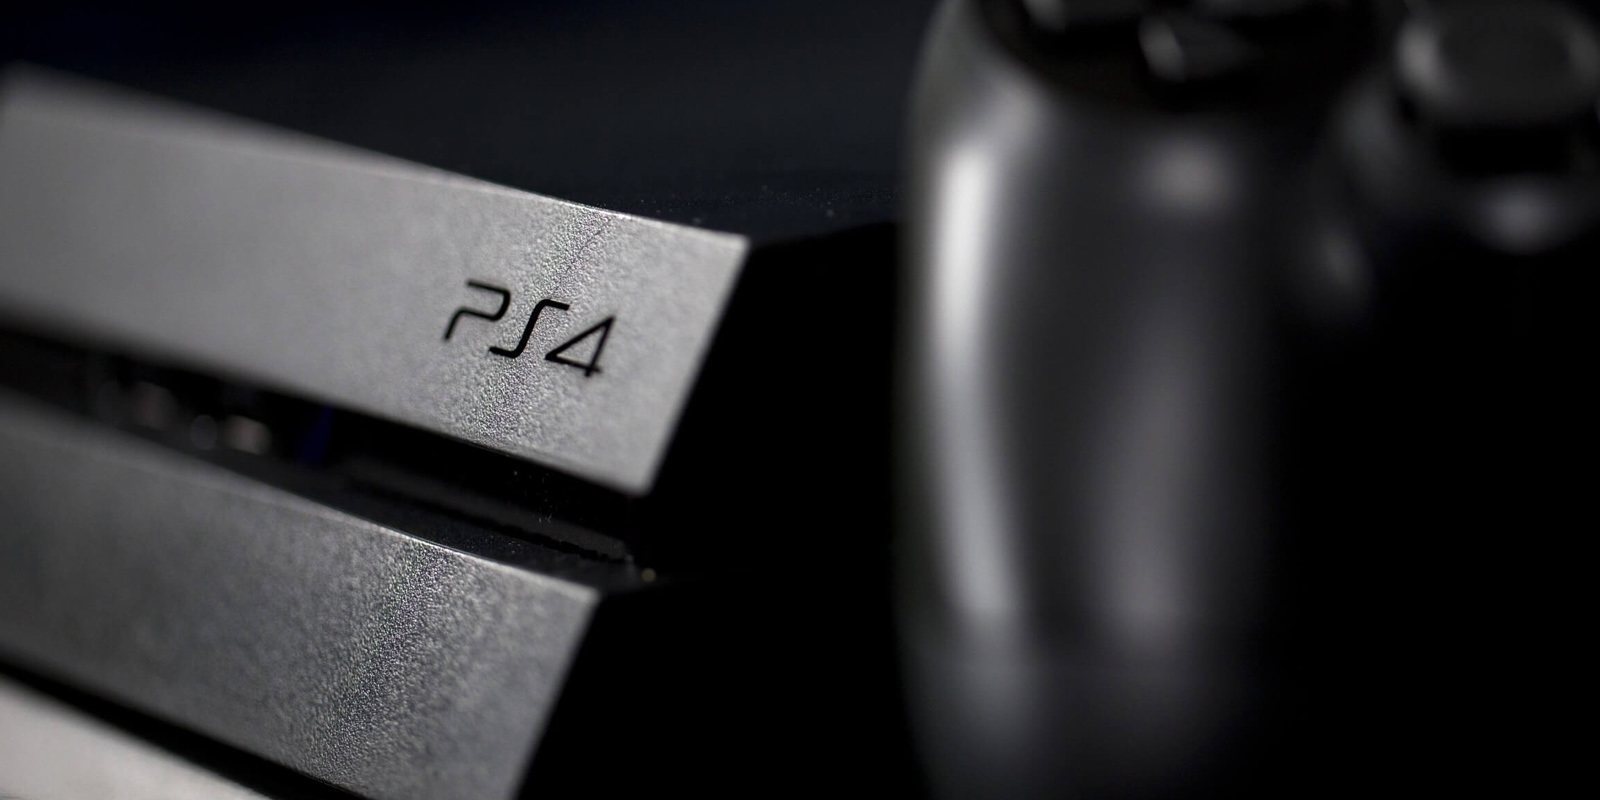 Un analista sitúa el lanzamiento de PlayStation 5 en noviembre de 2020